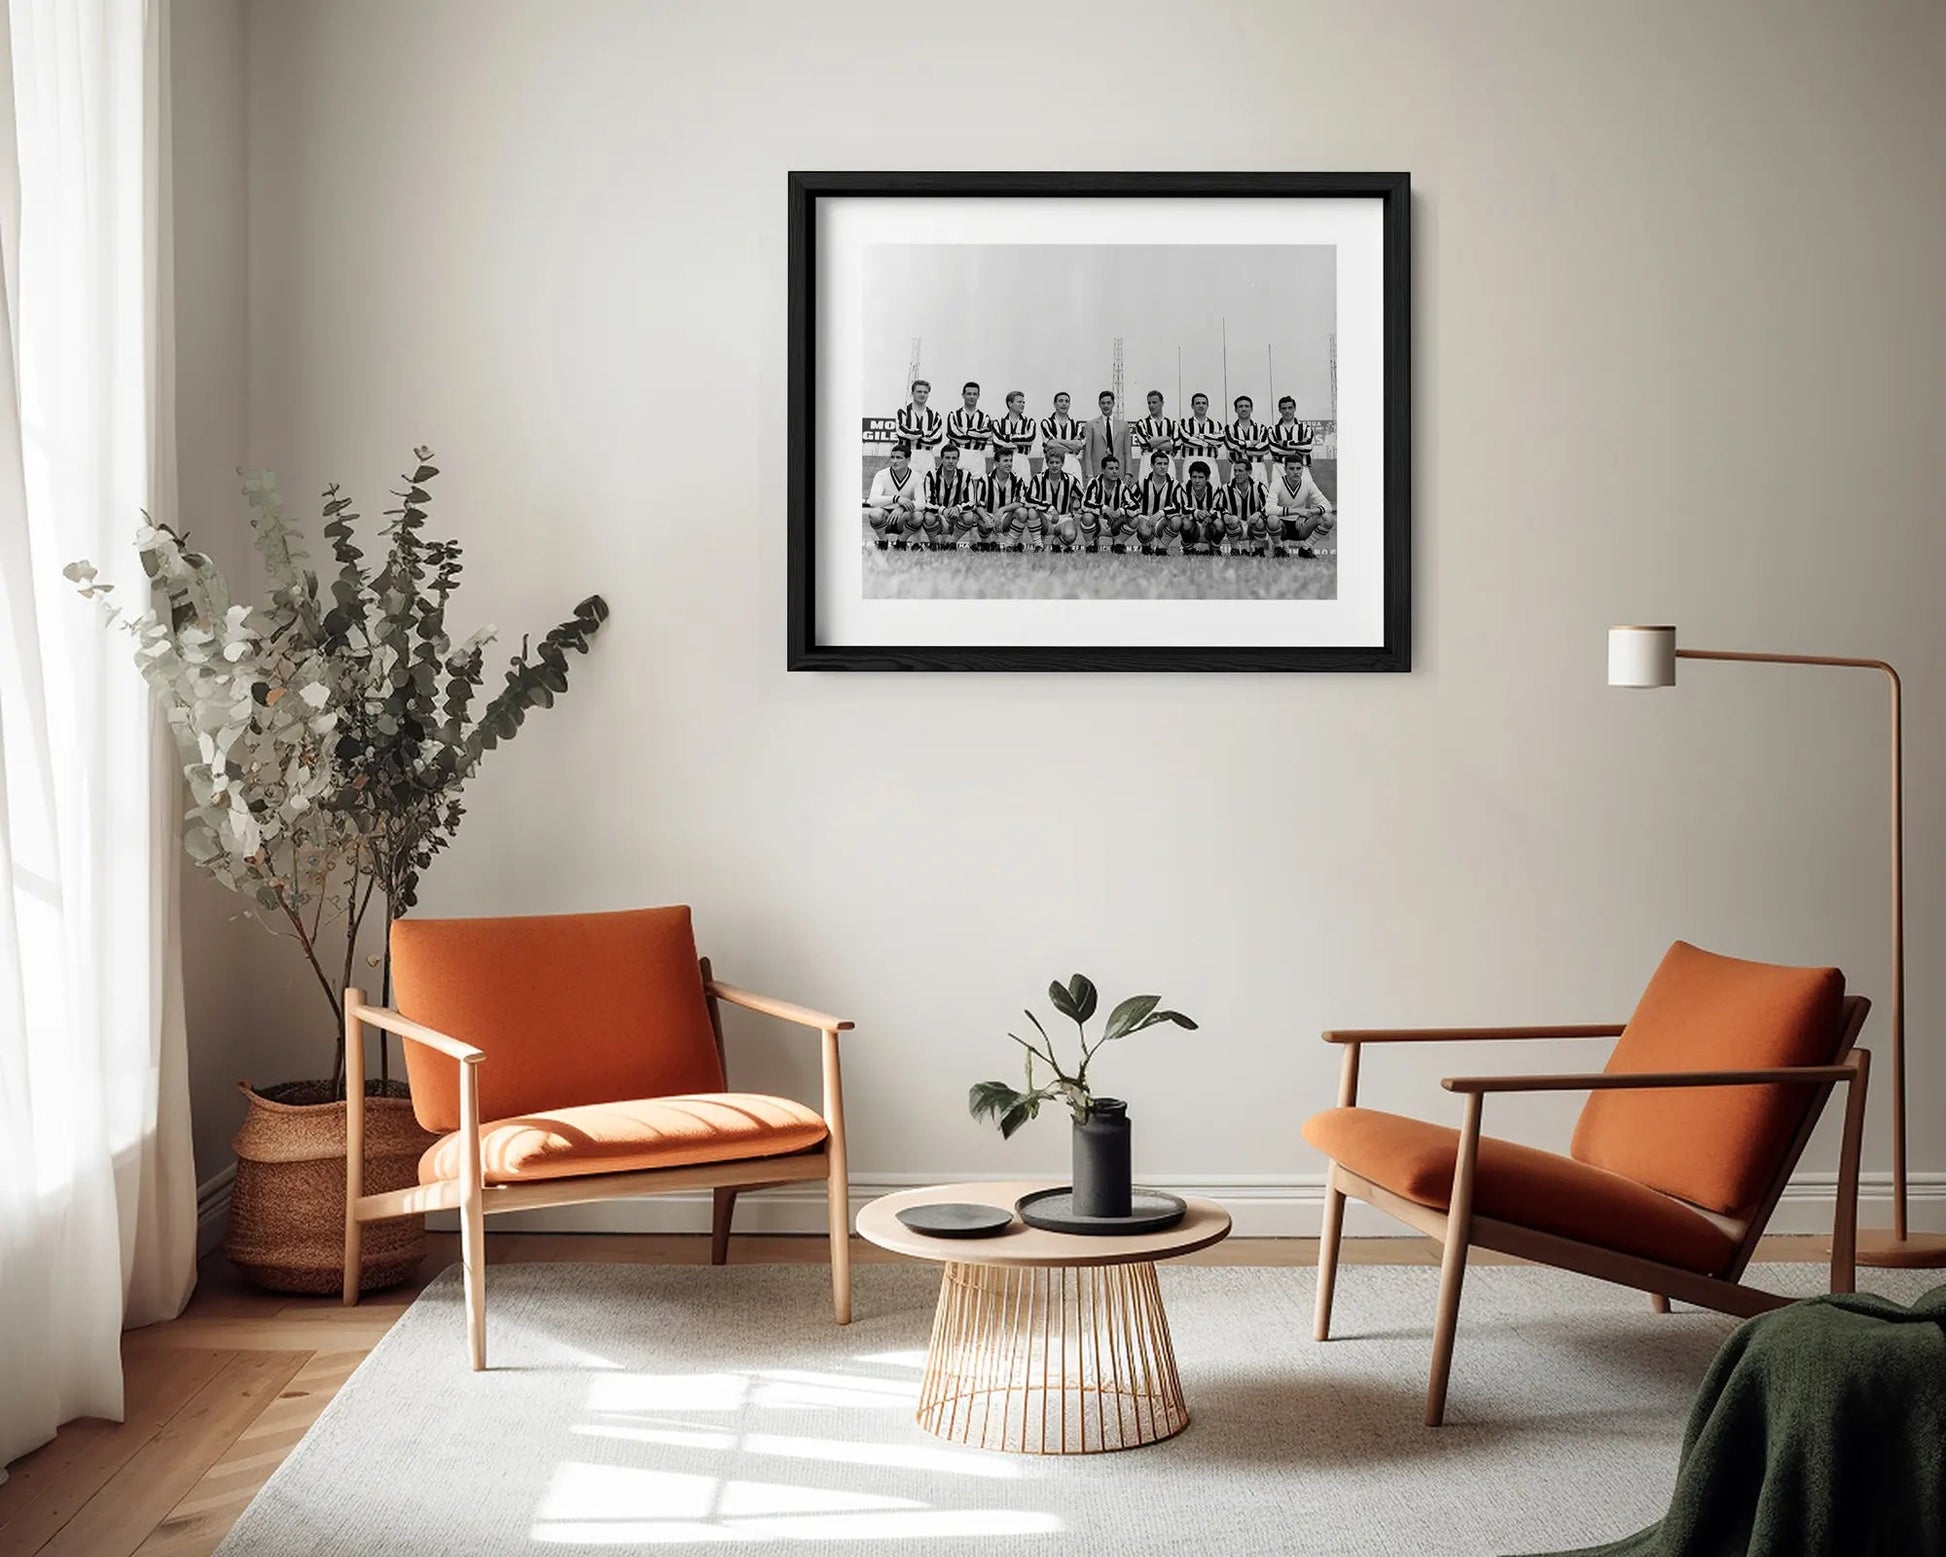 Juventus, la rosa della stagione 1958/1959 - Farabola Fotografia